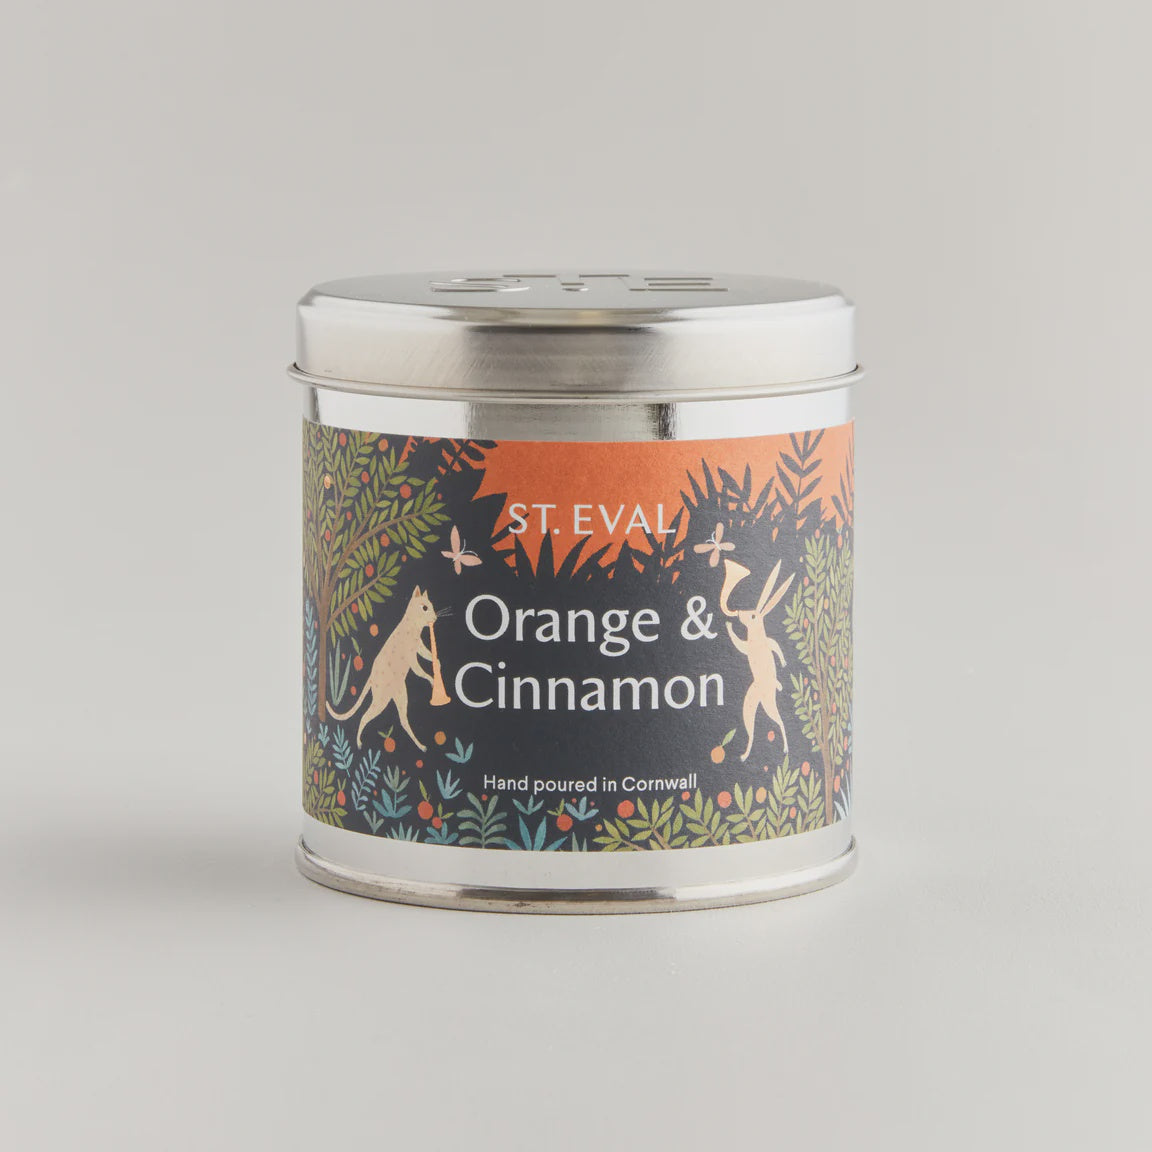 St Eval Candle Orange & Cinnamon